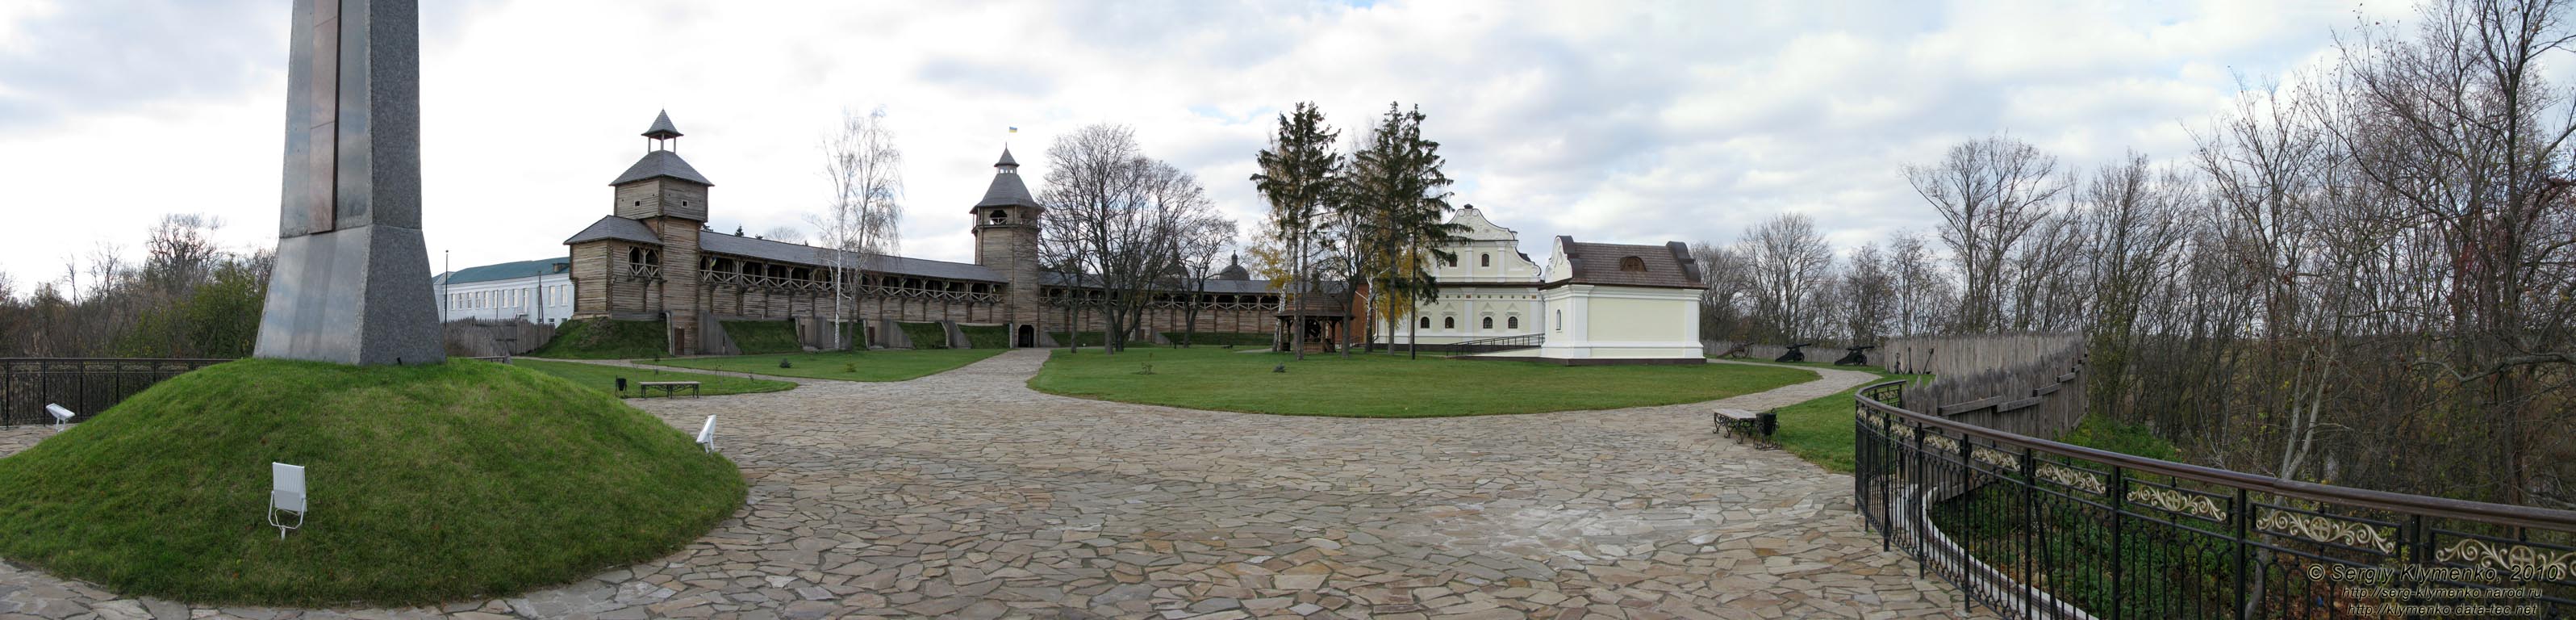 Батуринская цитадель (реконструкция, 2009 год). Вид с обзорной площадки возле памятного креста (панорама ~120°).